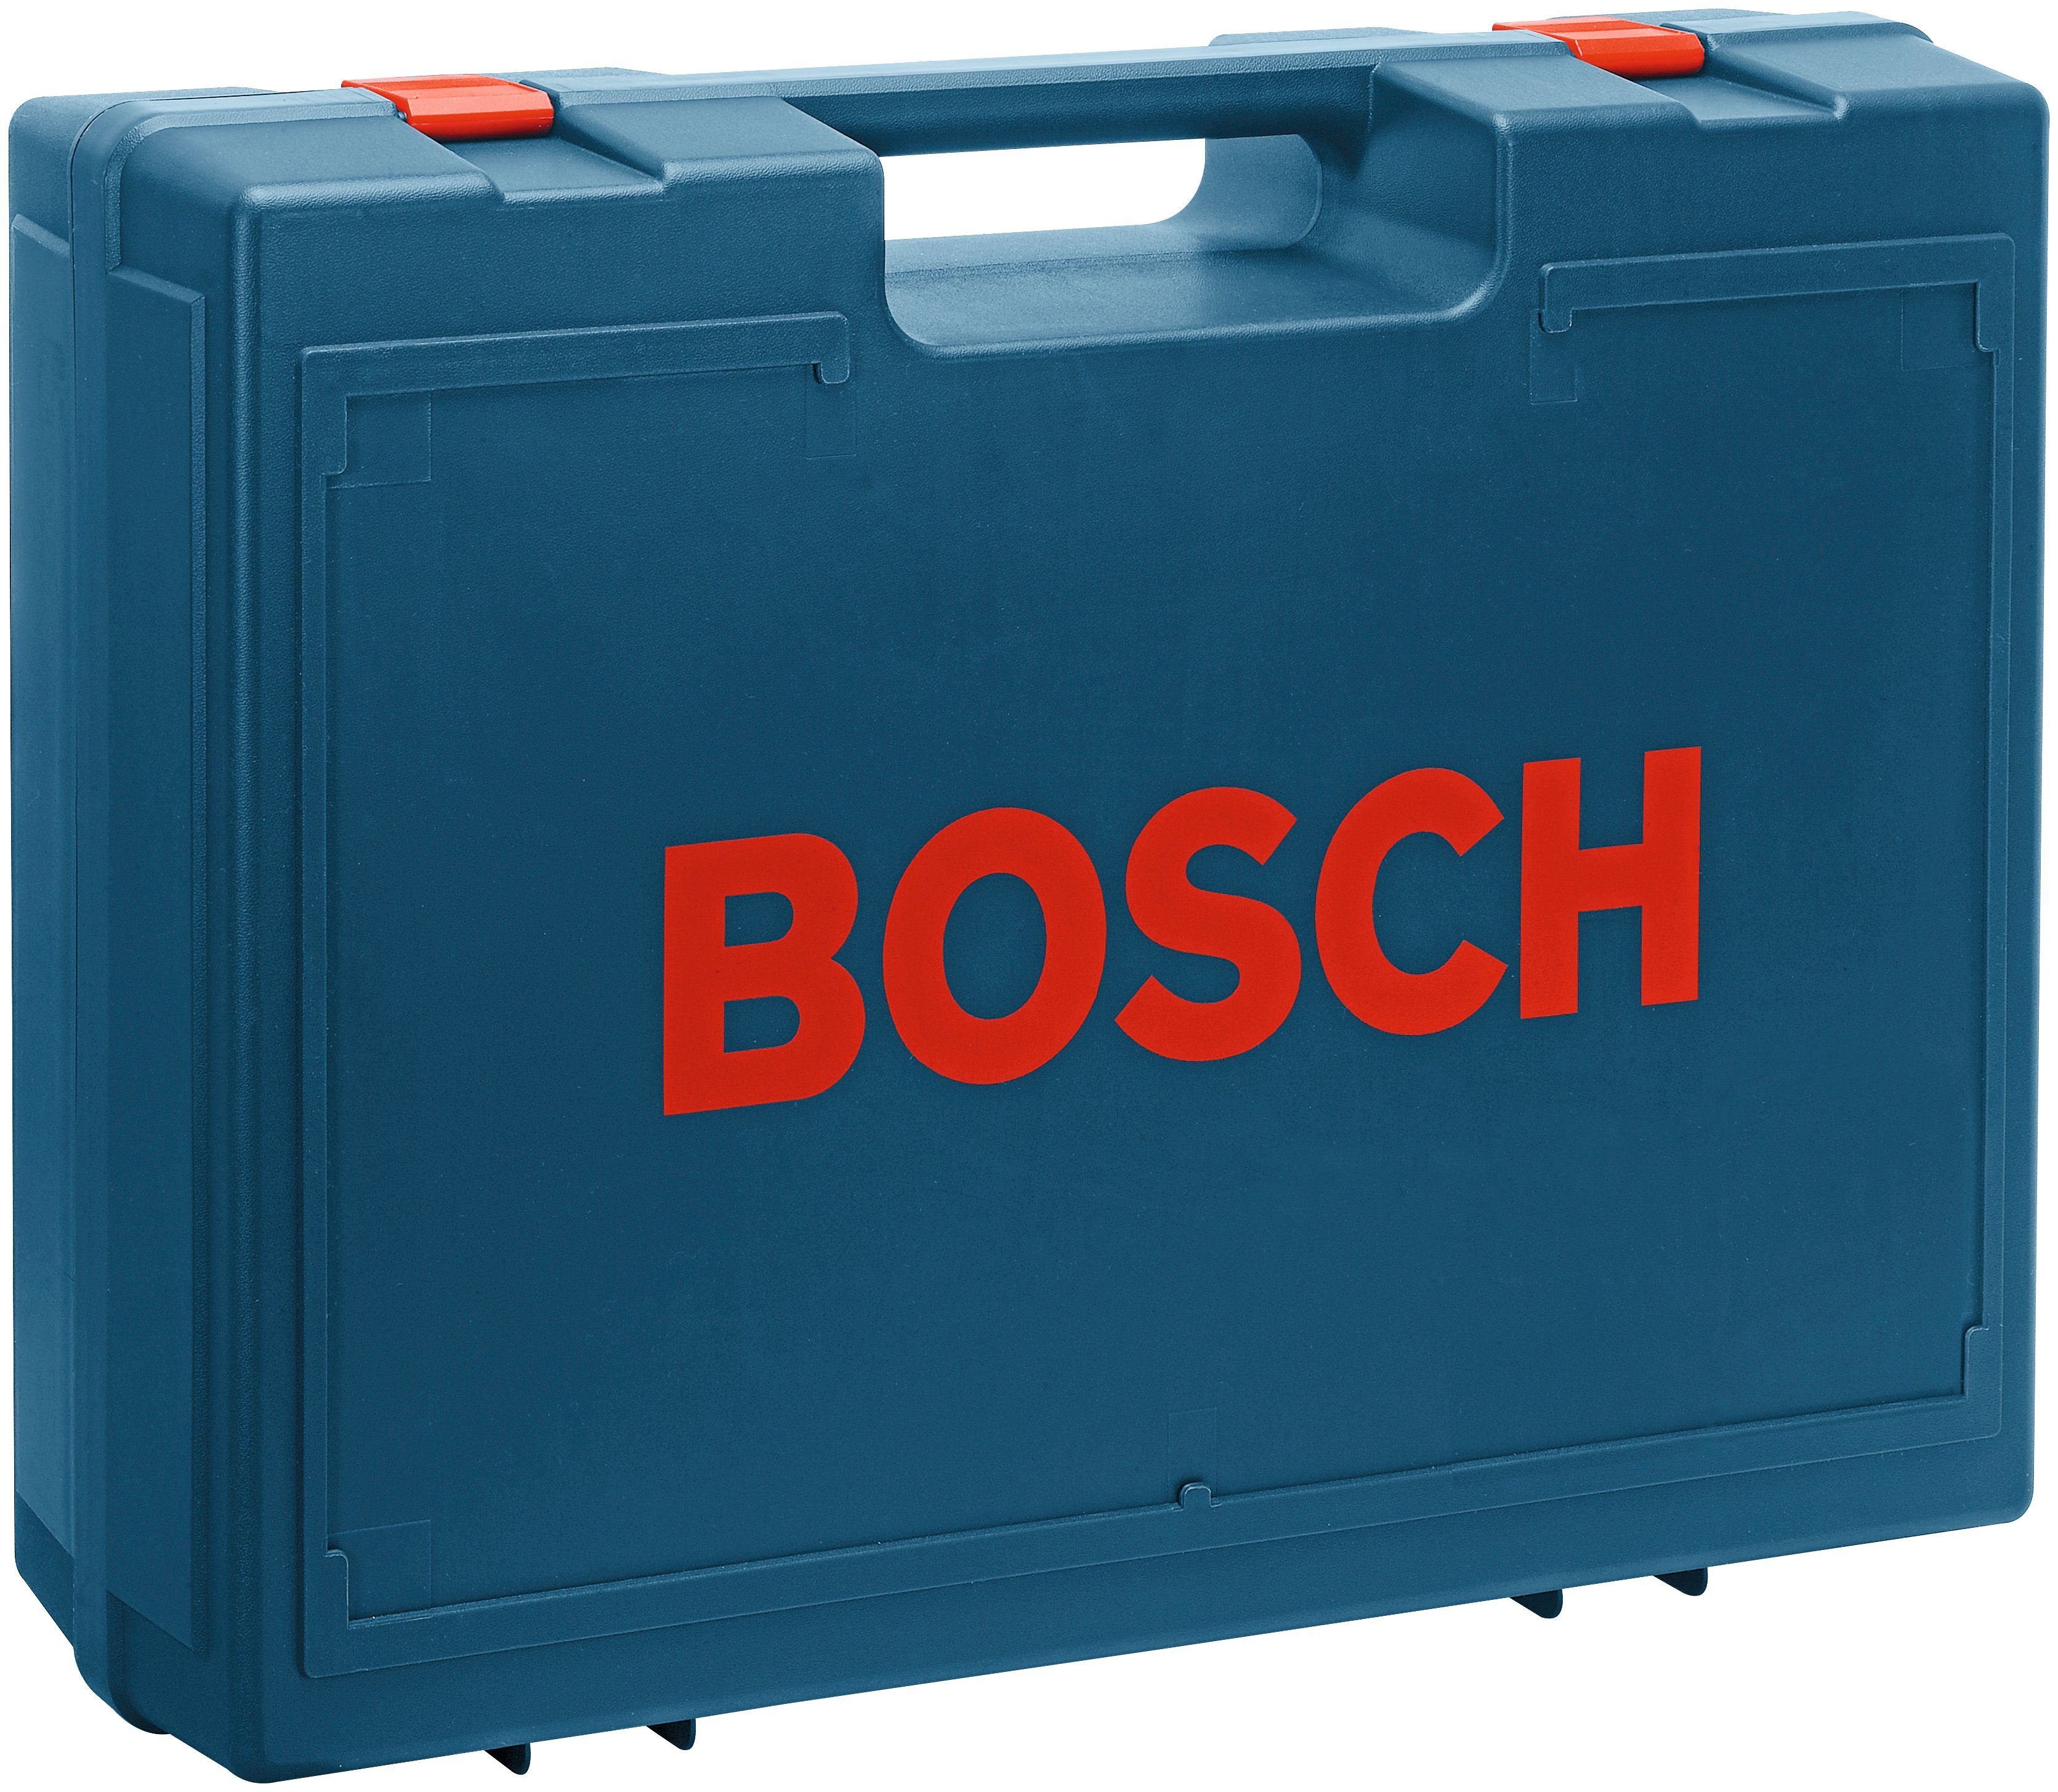 Professional GEX 125-1 Exzenterschleifer AE, Bosch U/min 24000